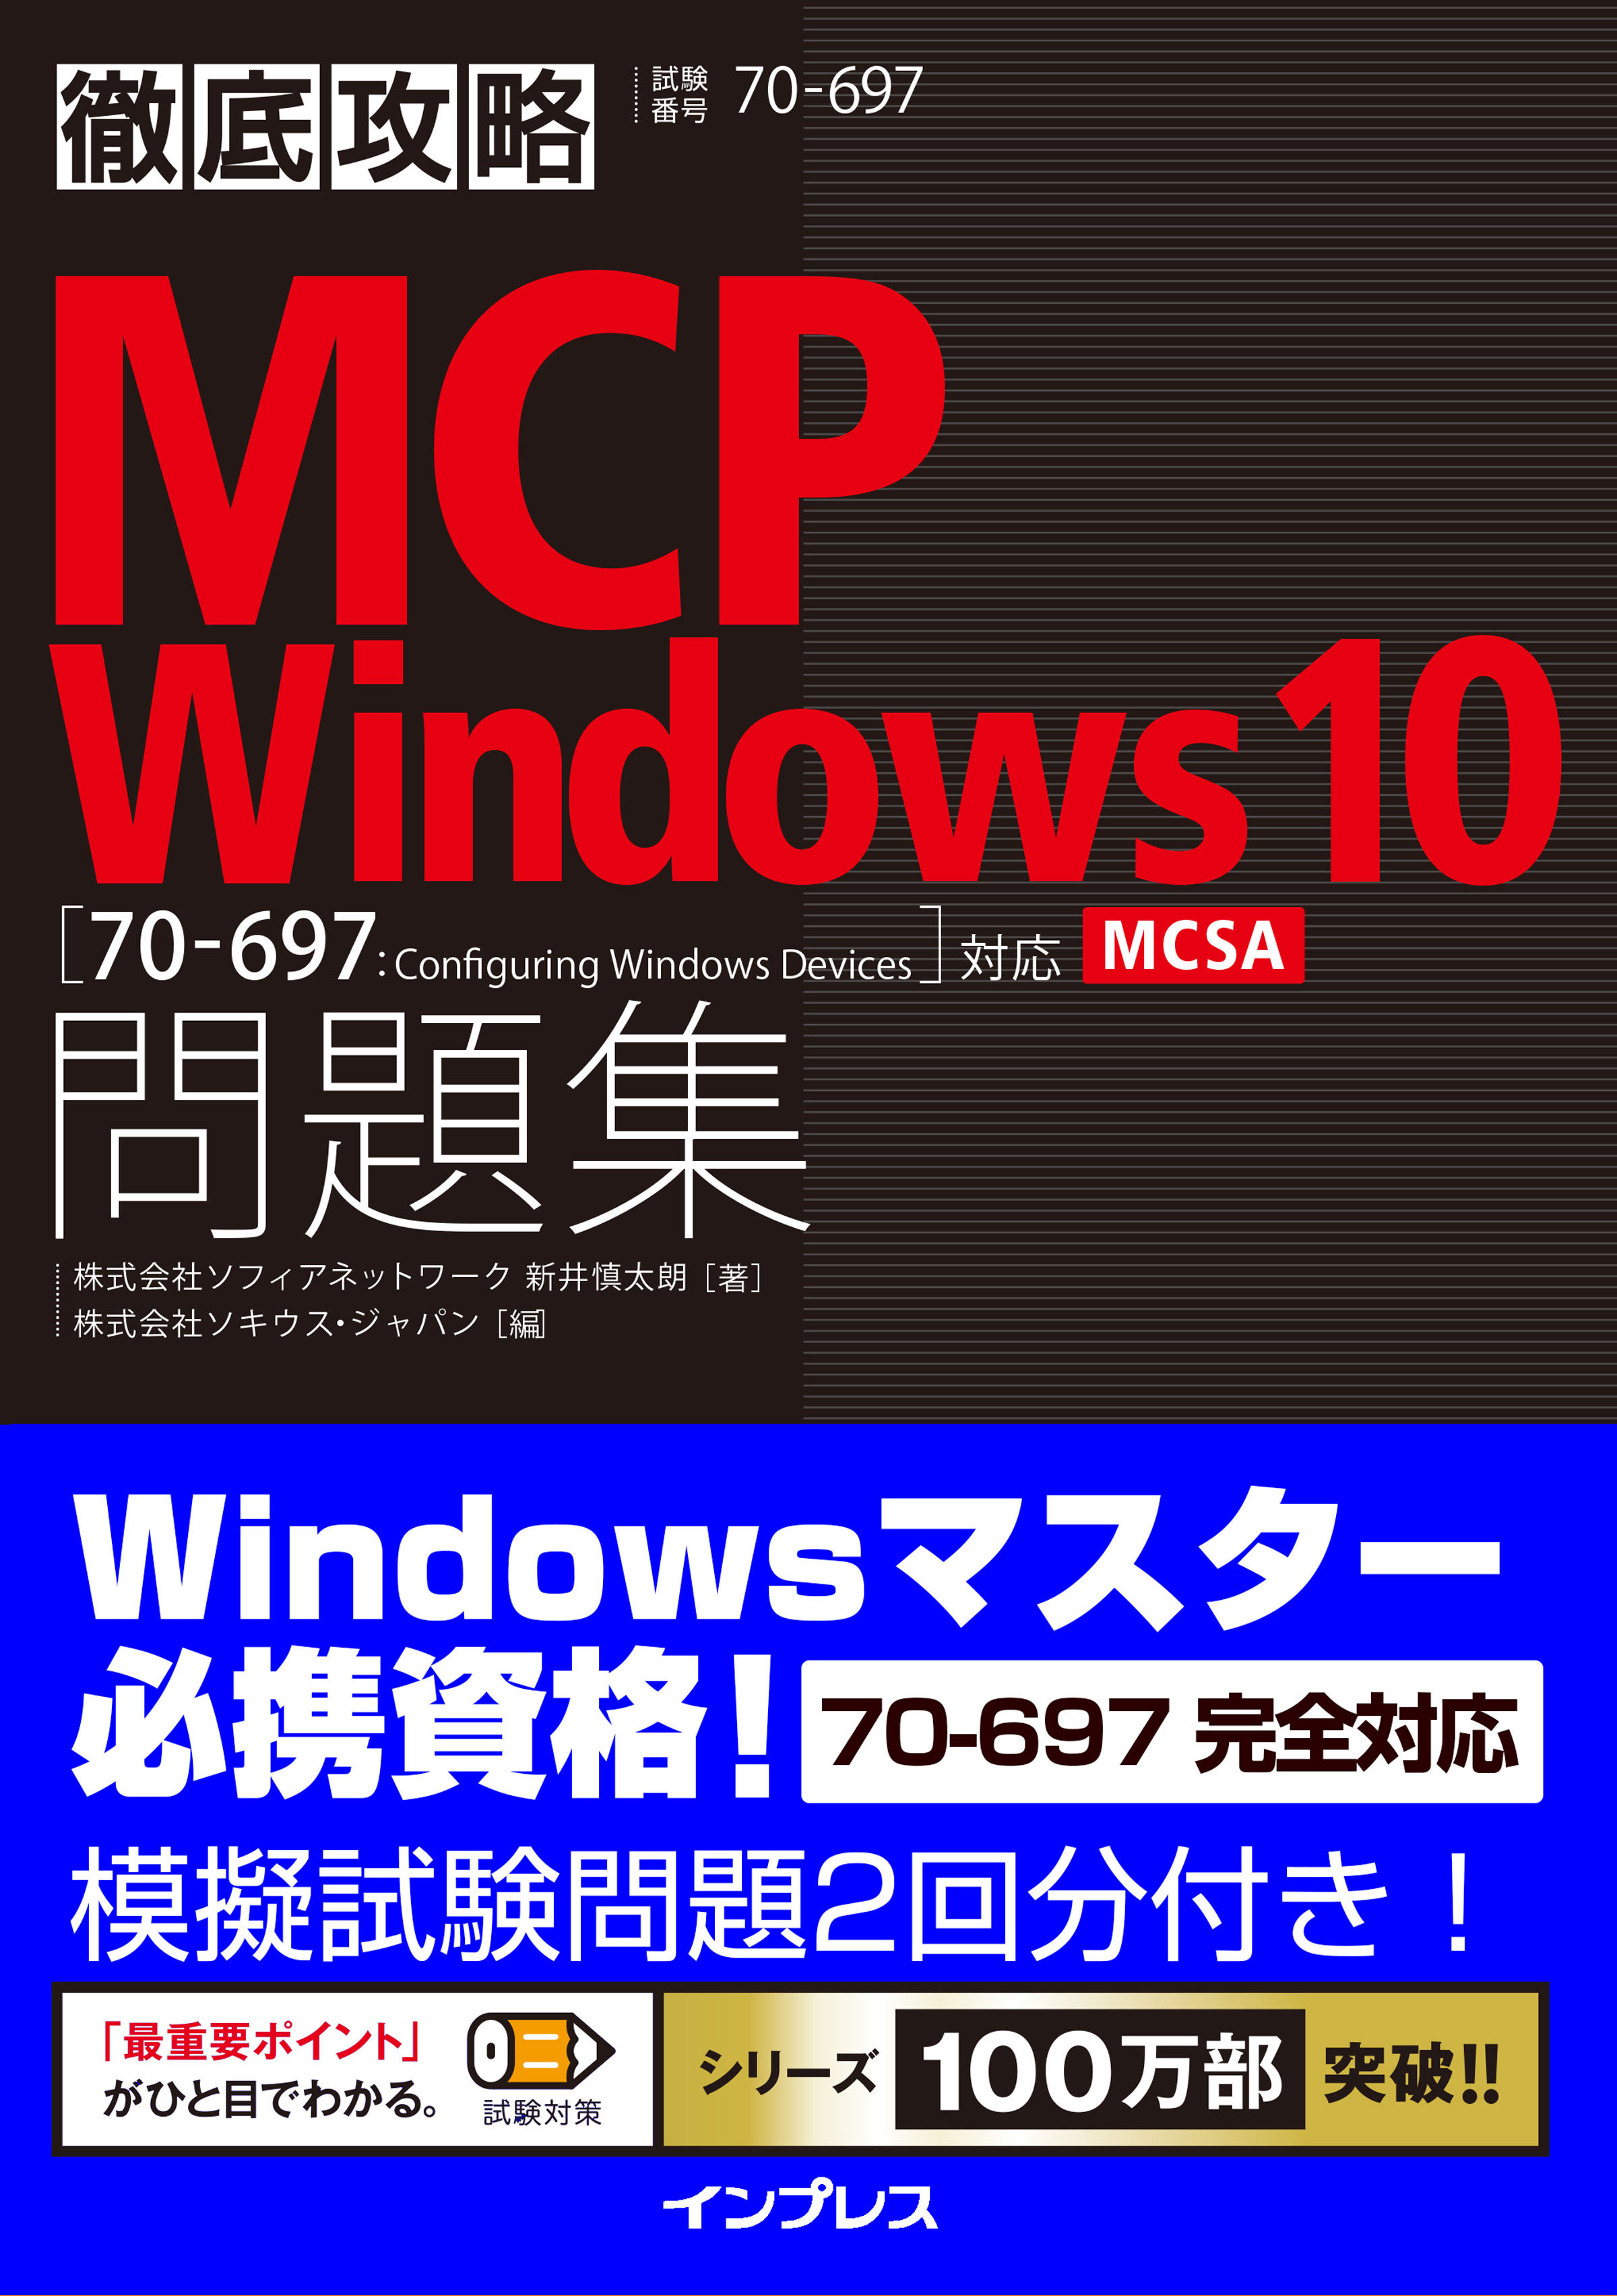 マイクロソフト認定のwindows 10資格を目指そう 窓の杜